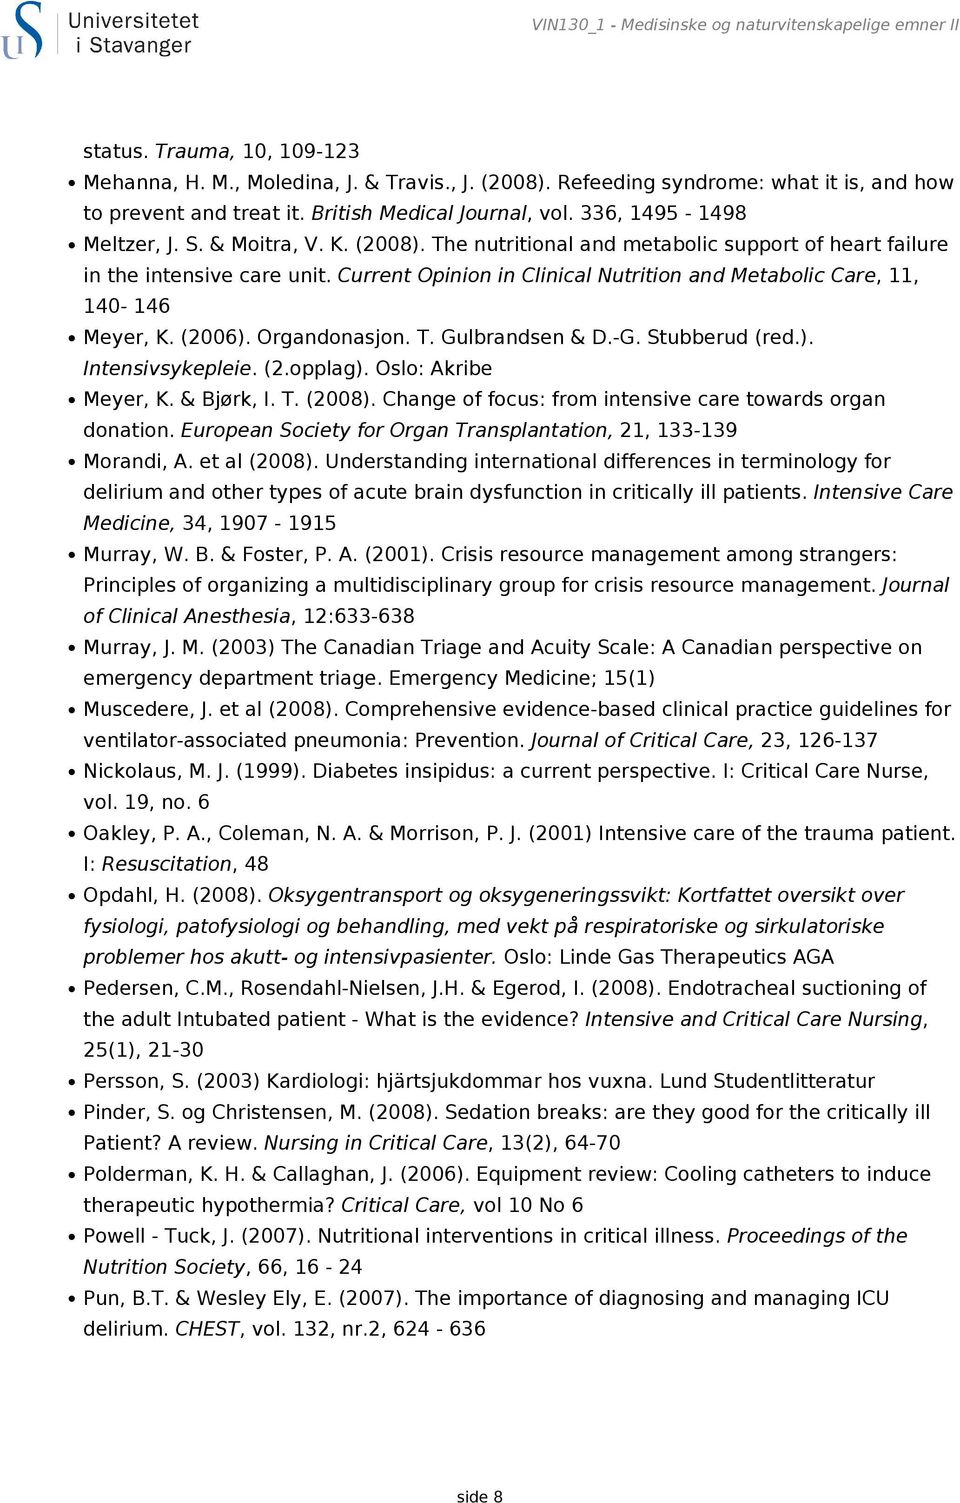 Current Opinion in Clinical Nutrition and Metabolic Care, 11, 140-146 Meyer, K. (2006). Organdonasjon. T. Gulbrandsen & D.-G. Stubberud (red.). Intensivsykepleie. (2.opplag). Oslo: Akribe Meyer, K.